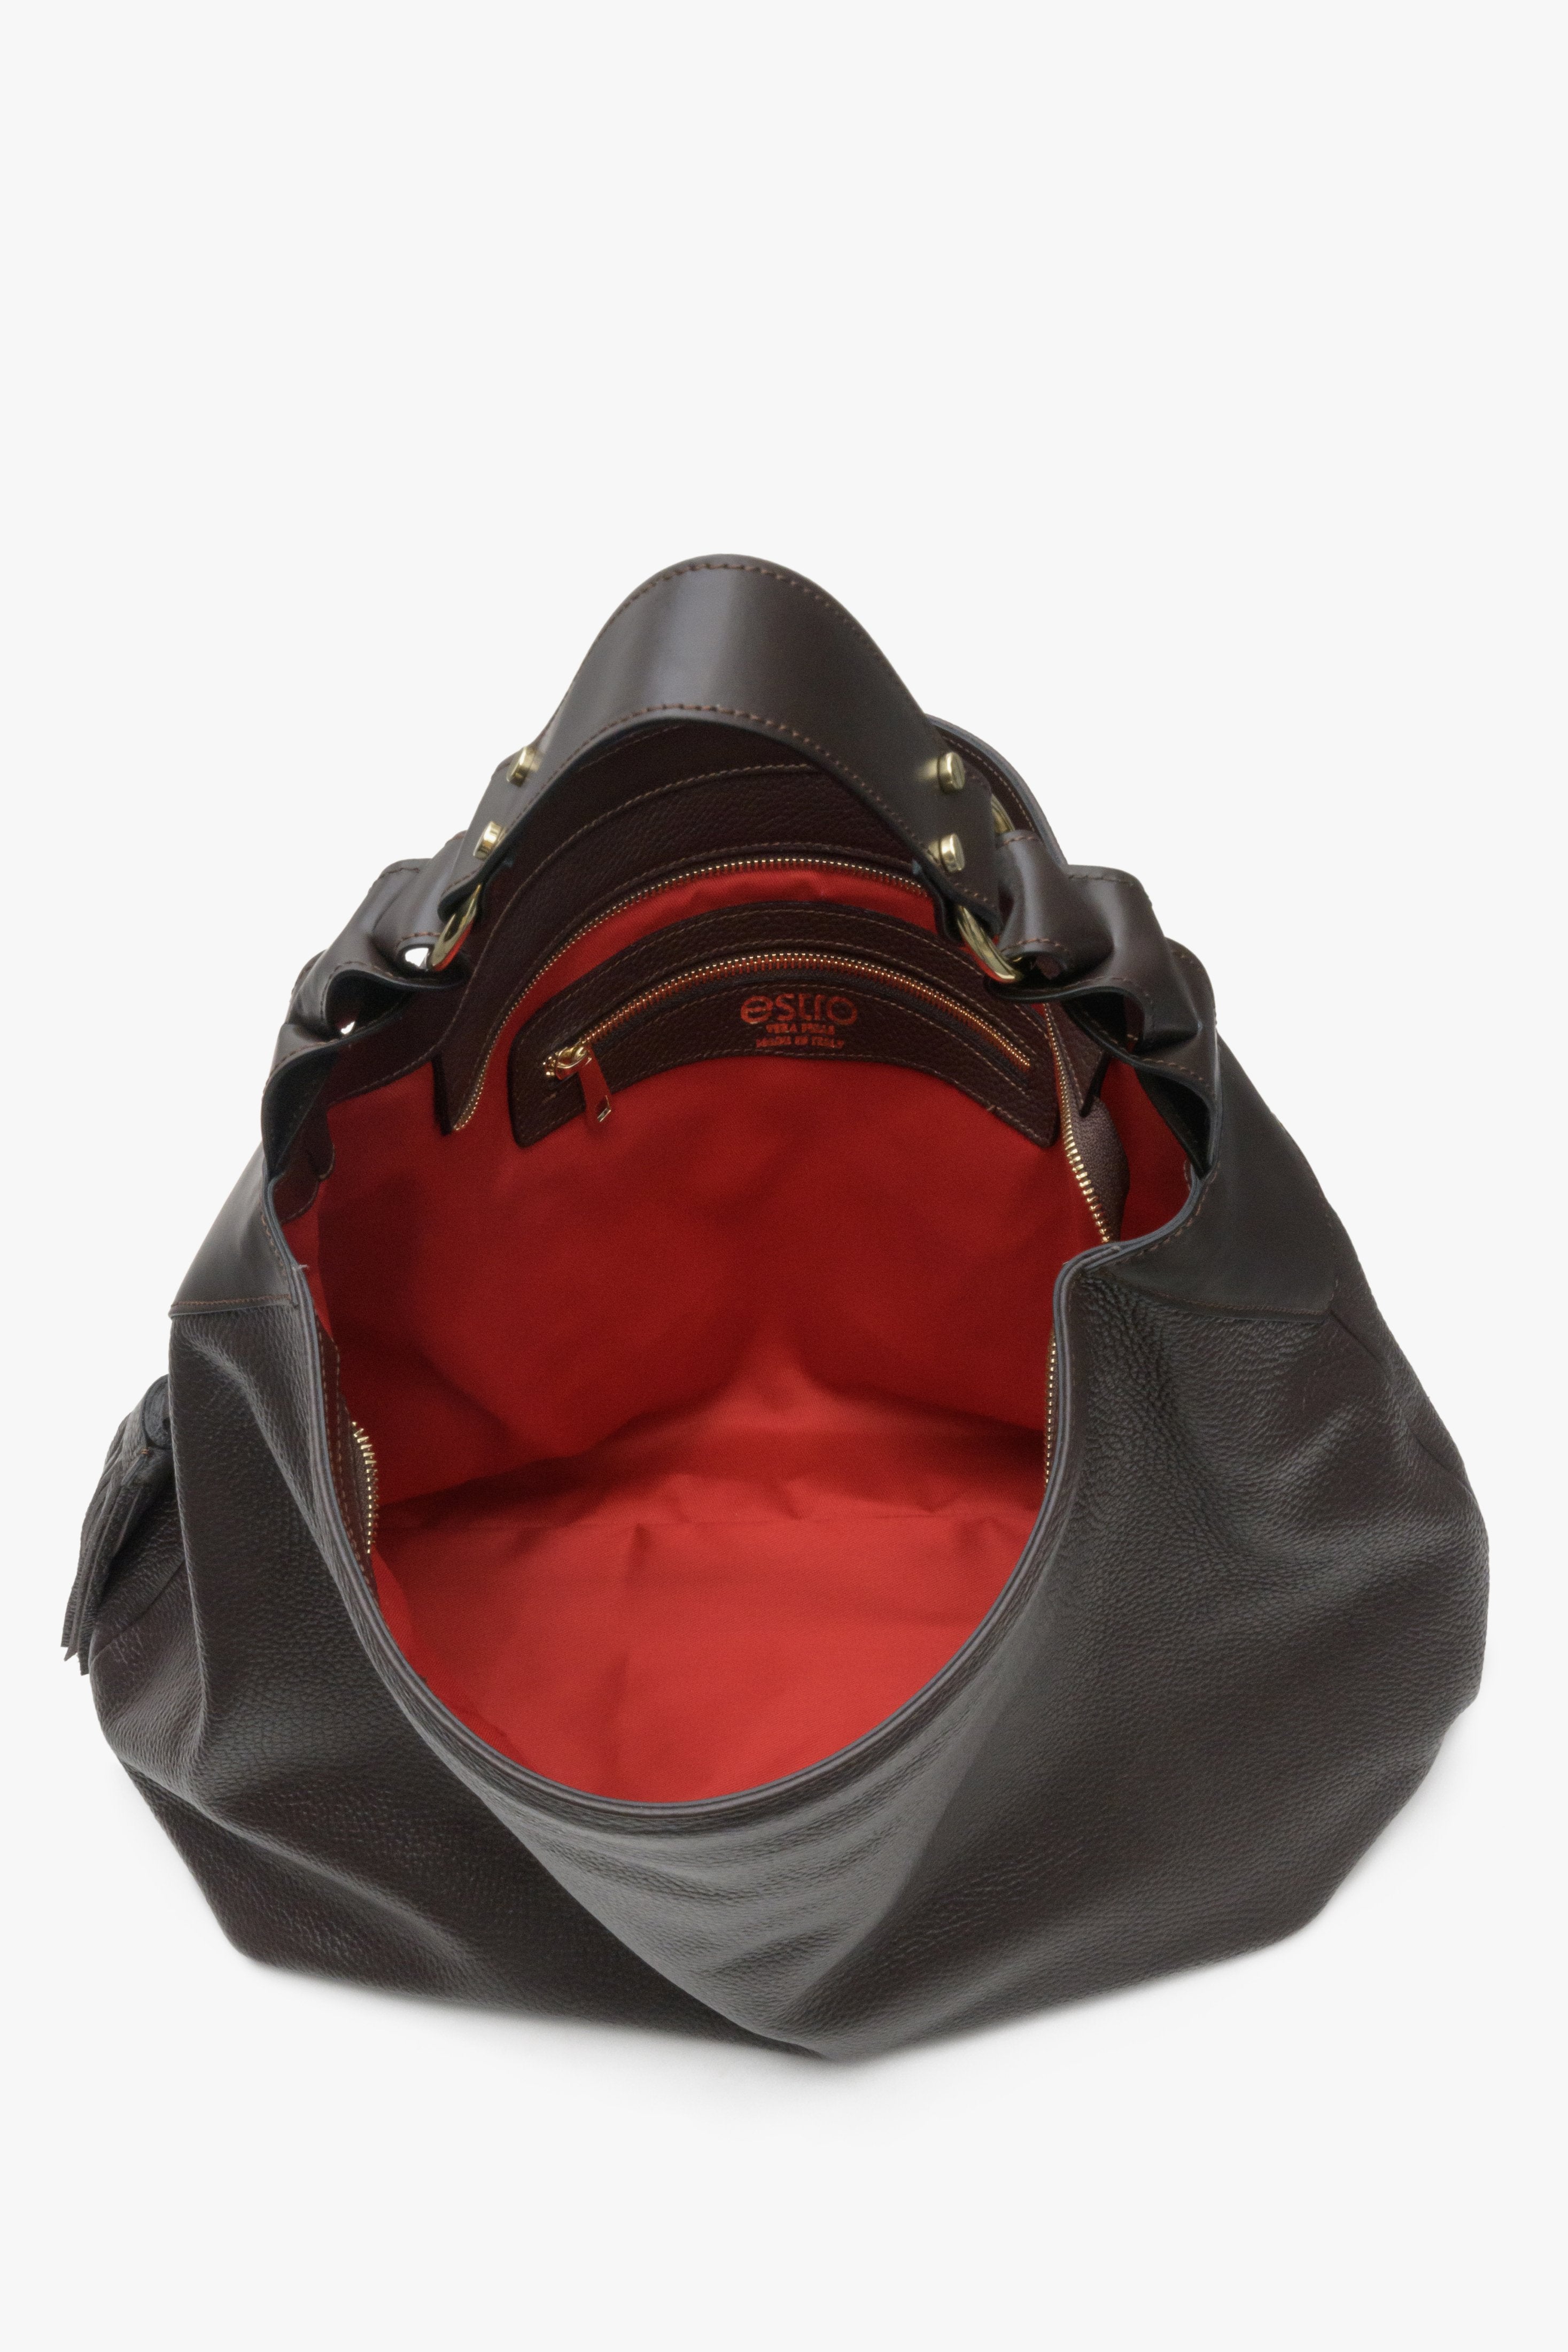 Skórzana torba damska hobo w kolorze ciemnobrązowym - zbliżenie na wnętrze modelu.